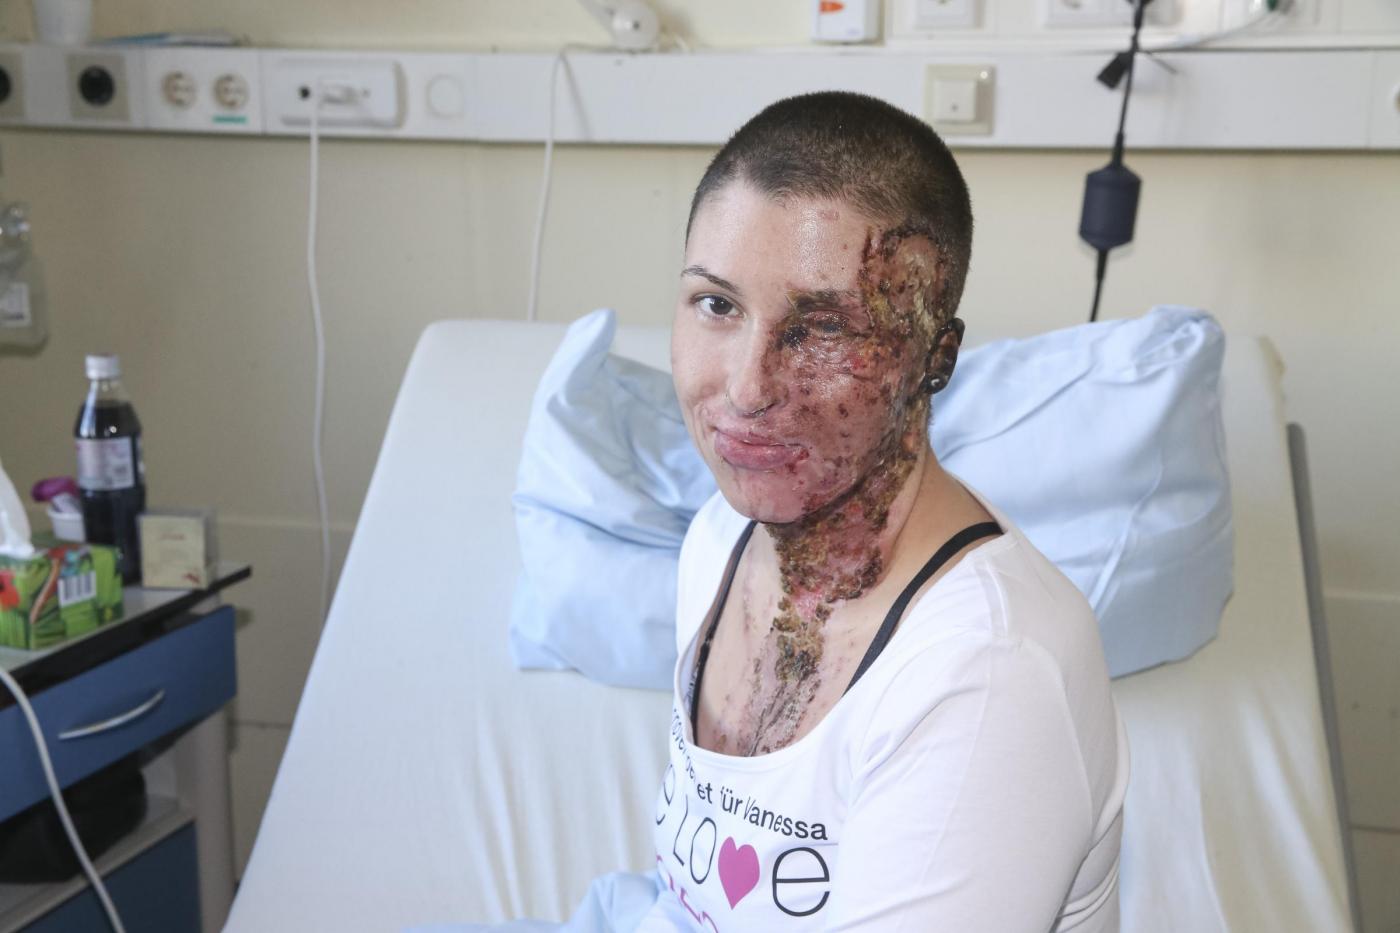 Germania ragazza sfigurata con acido mostra coraggiosamente il suo volto